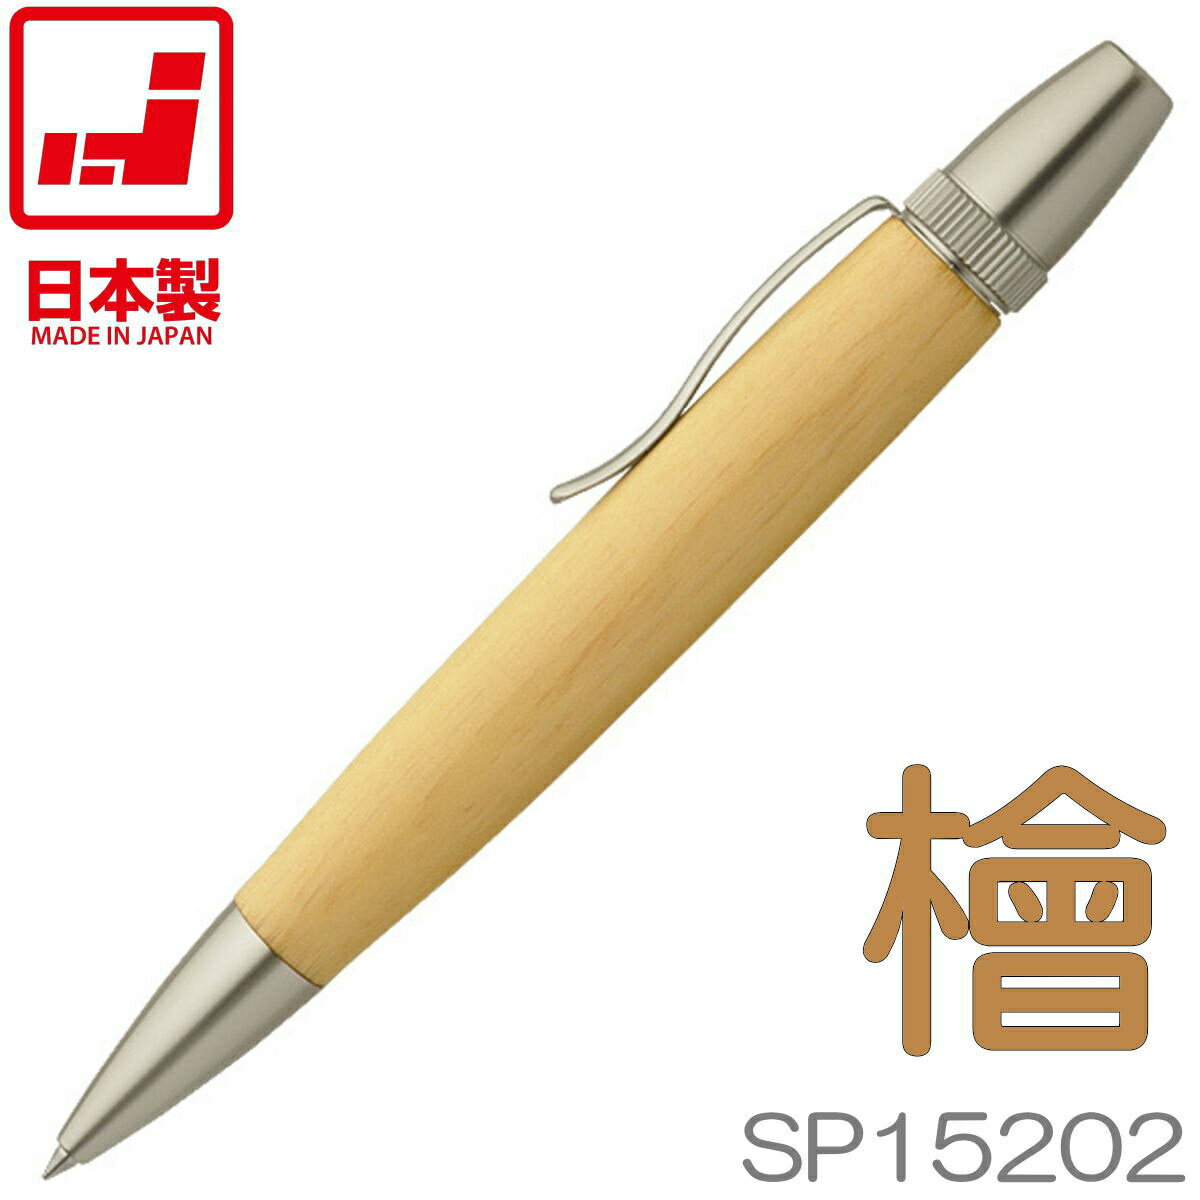 【あす楽】F-STYLE 手作りボールペン | 木曽桧 ヒノキ SP15202 パトリオット | 全長125mm | 日本製 銘木 木製 木軸ペン